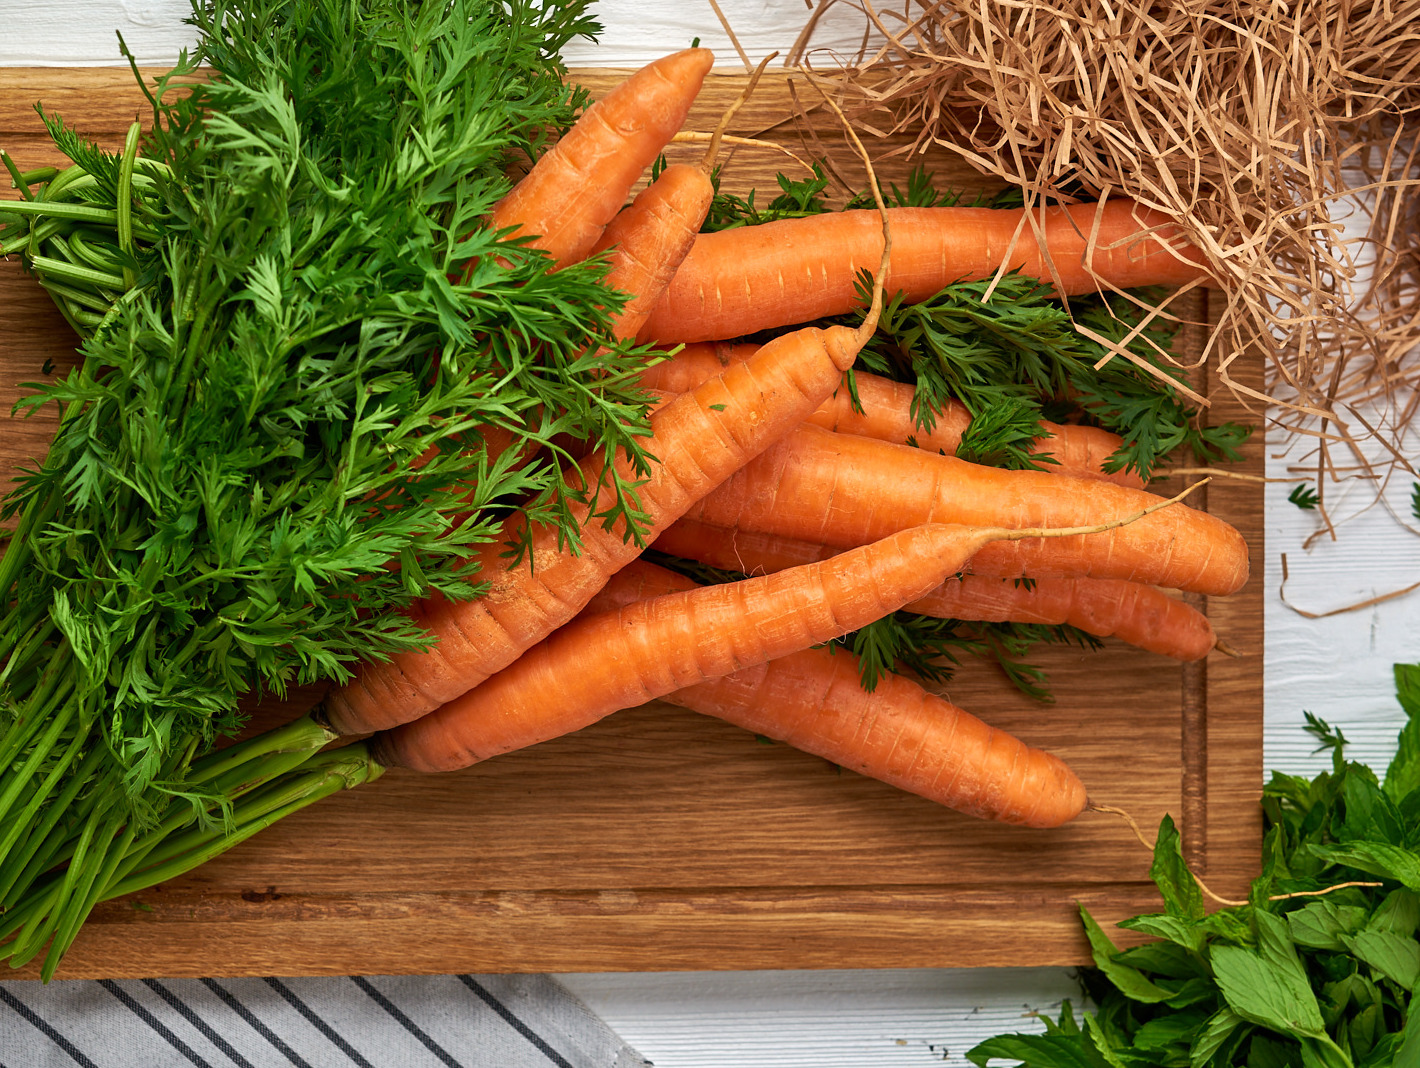 Морковь – полезные свойства, состав и противопоказания